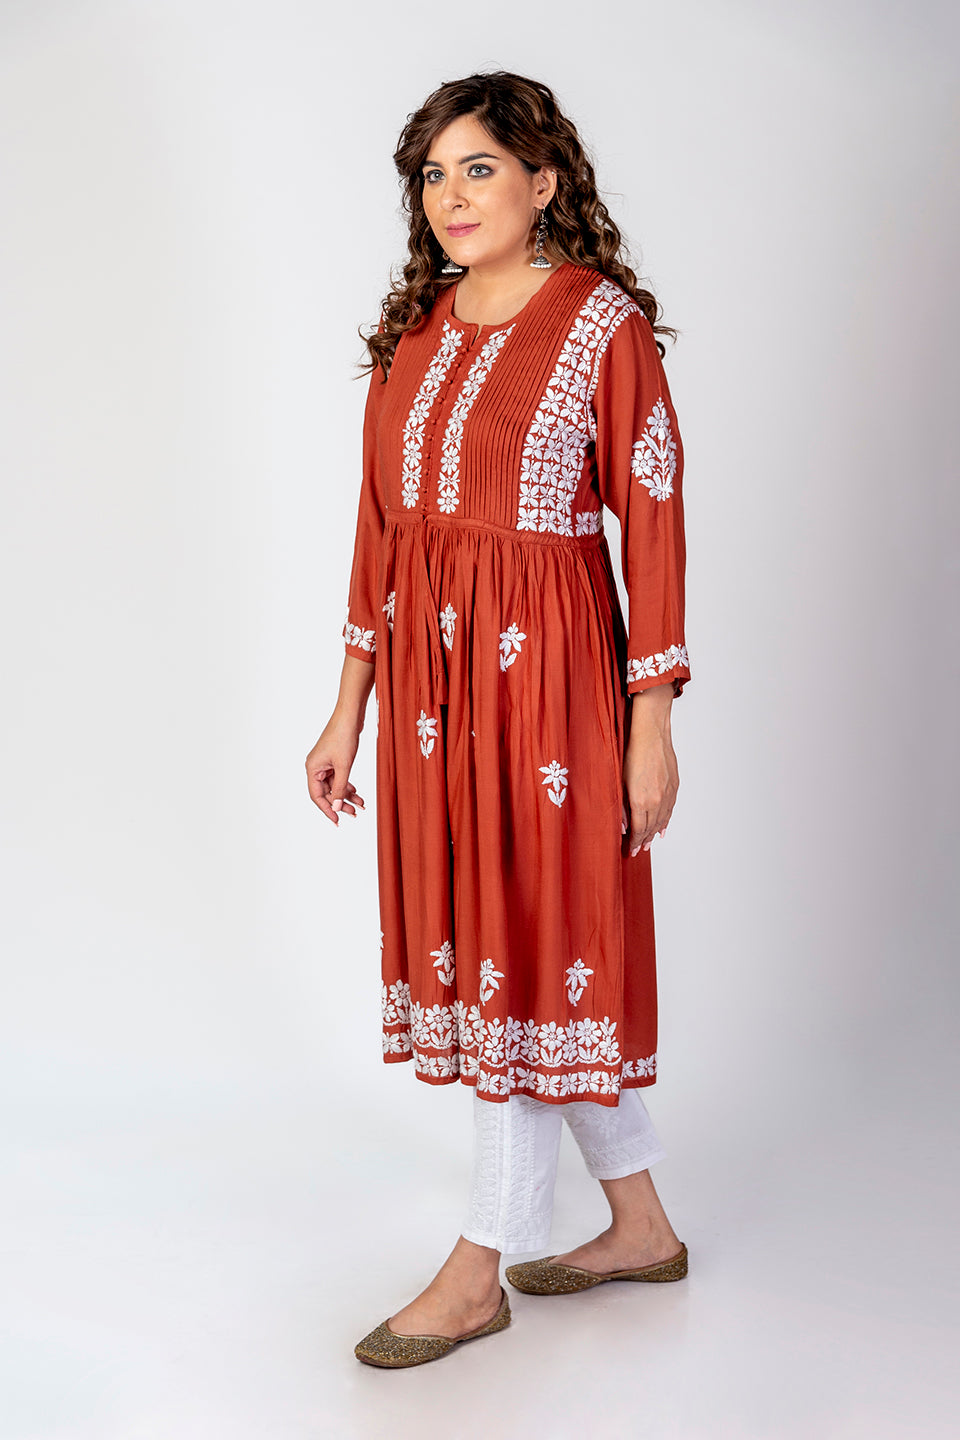 Miravan White Chikan Cotton Anarkali Embroidery Kurta Dress (White, Small)  : Amazon.in: Fashion